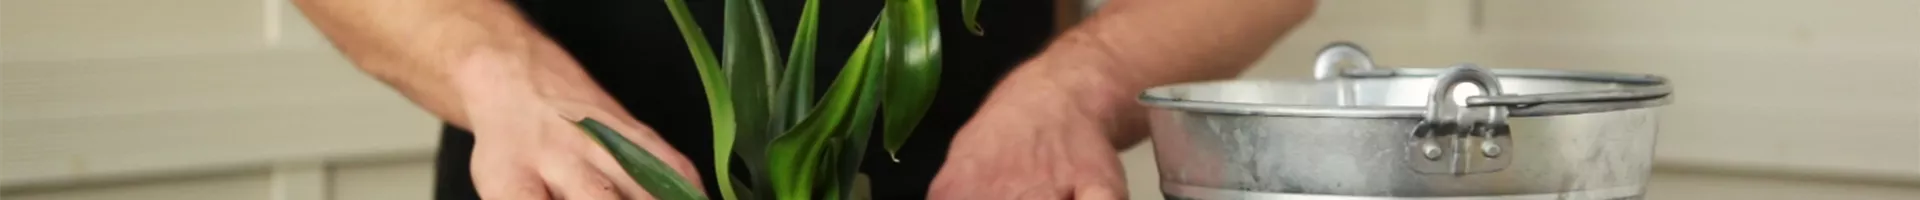 Milchstern - Einpflanzen in ein Gefäß (Thumbnail).jpg